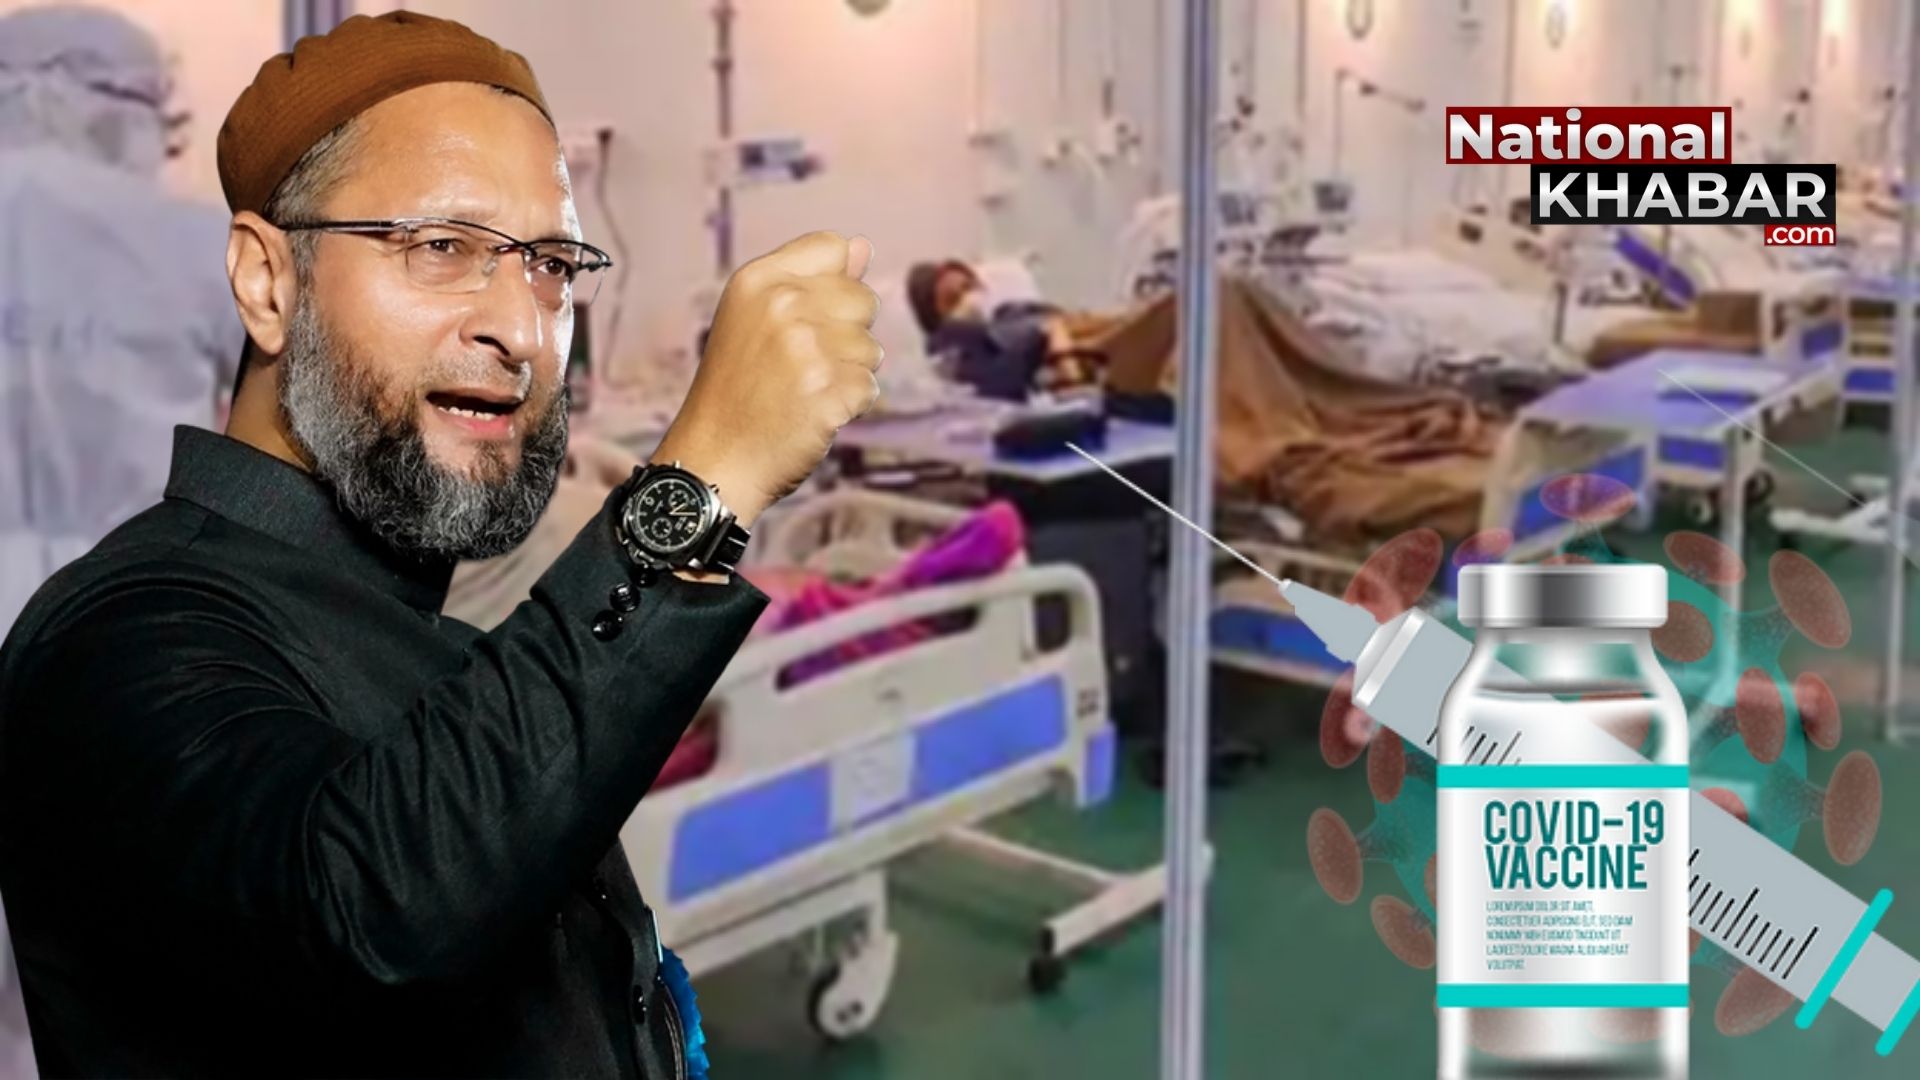 कोरोना वैक्सीन: पीएम मोदी की घोषणा पर आया असदुद्दीन ओवैसी का बयान, कहा 'यह कोर्ट के दखल का नतीजा'